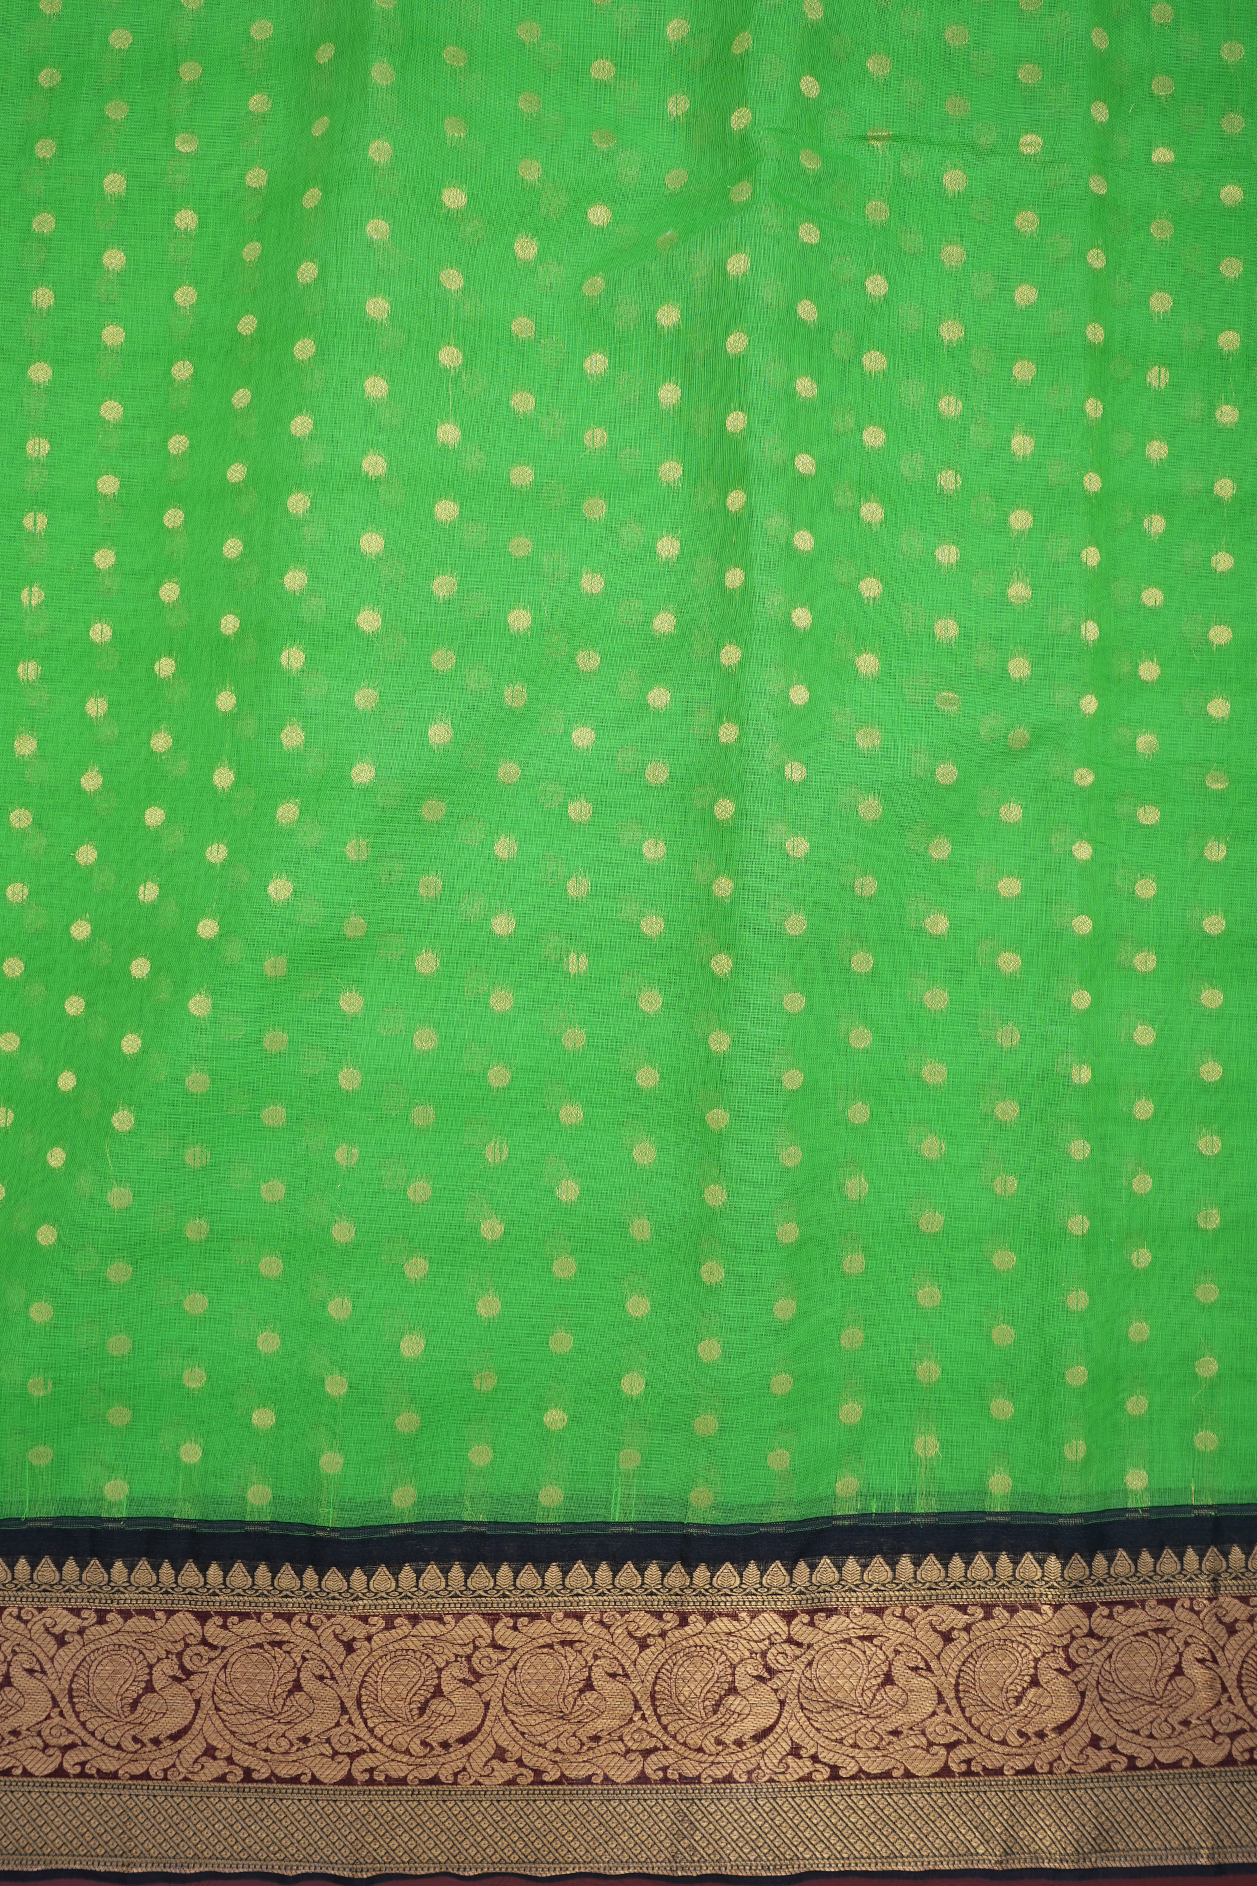 Polka Dots Parrot Green Kora Silk Cotton Saree